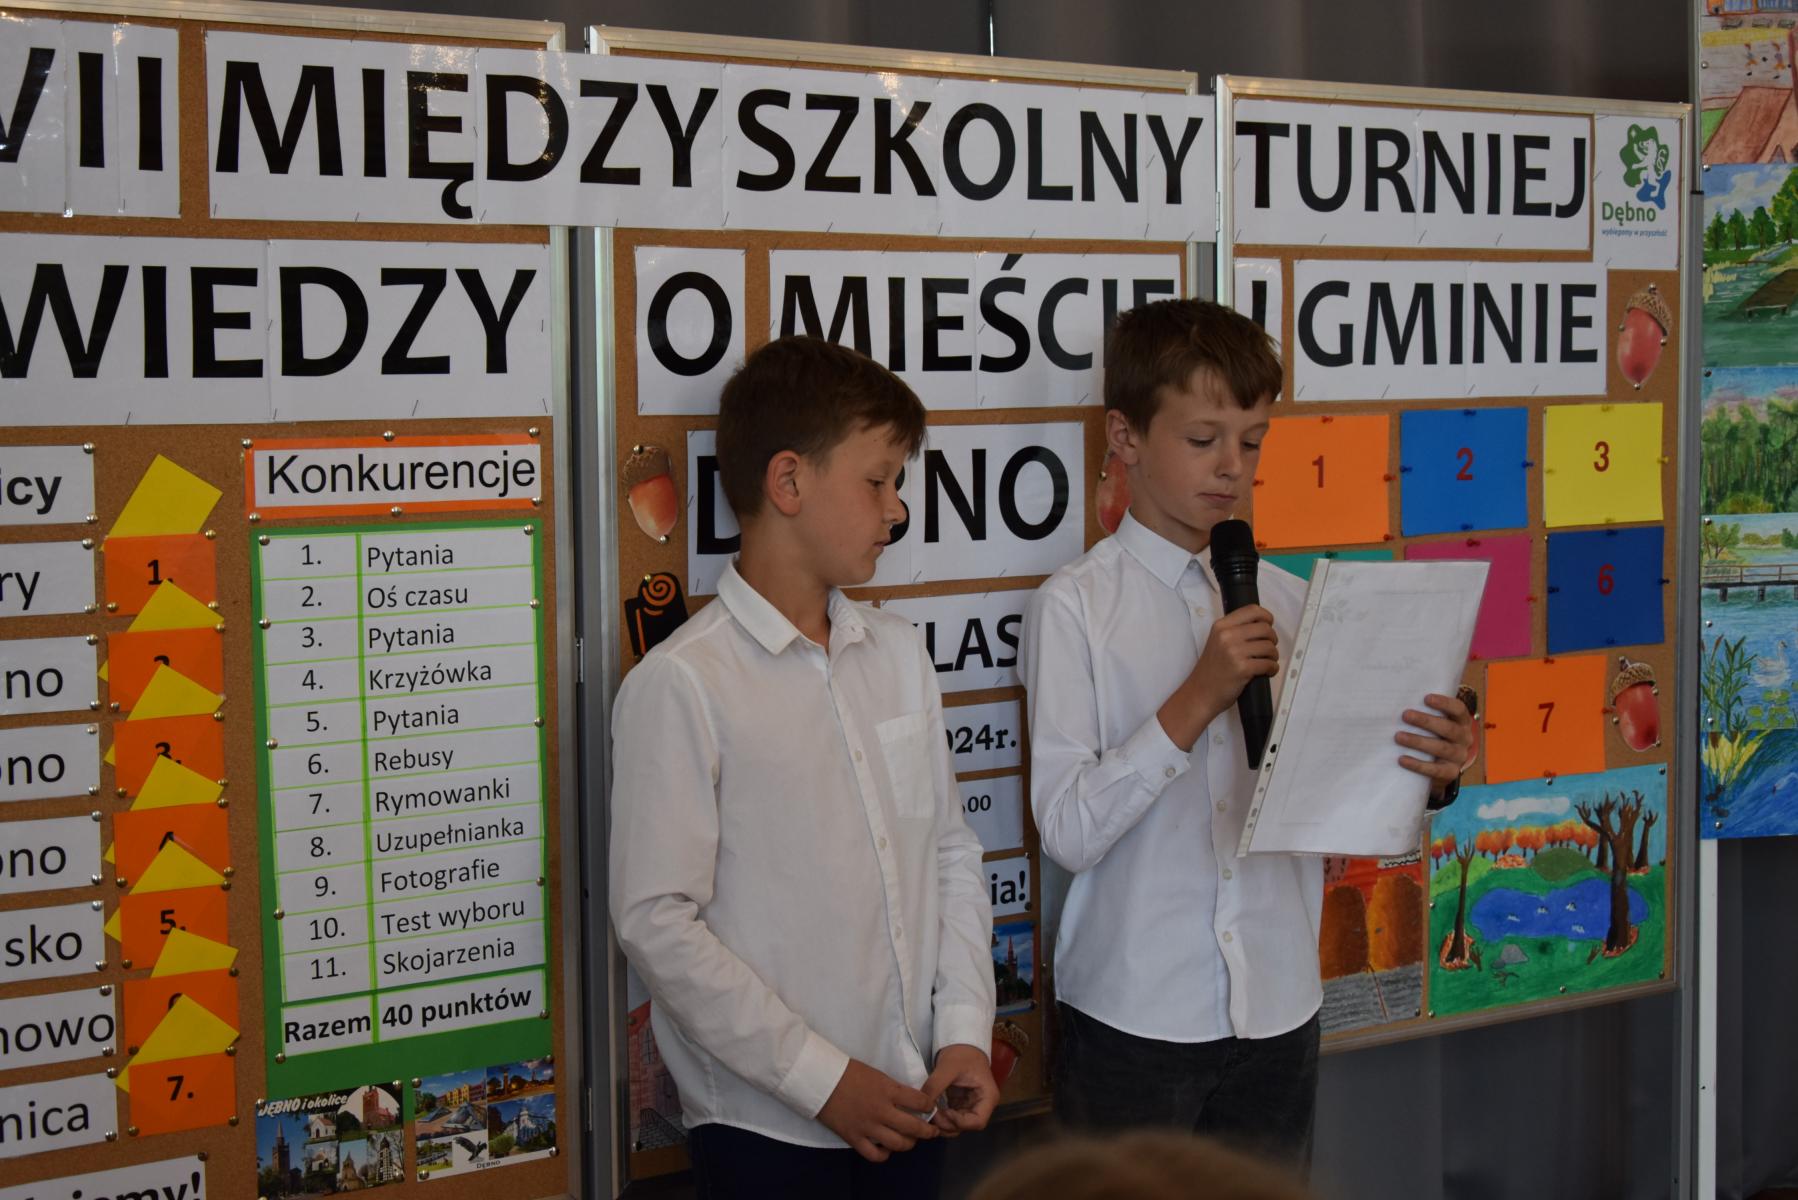 Dwóch uczniów w białych koszulach, jeden z nich trzyma mikrofon odczytuje wierszyk z kartki